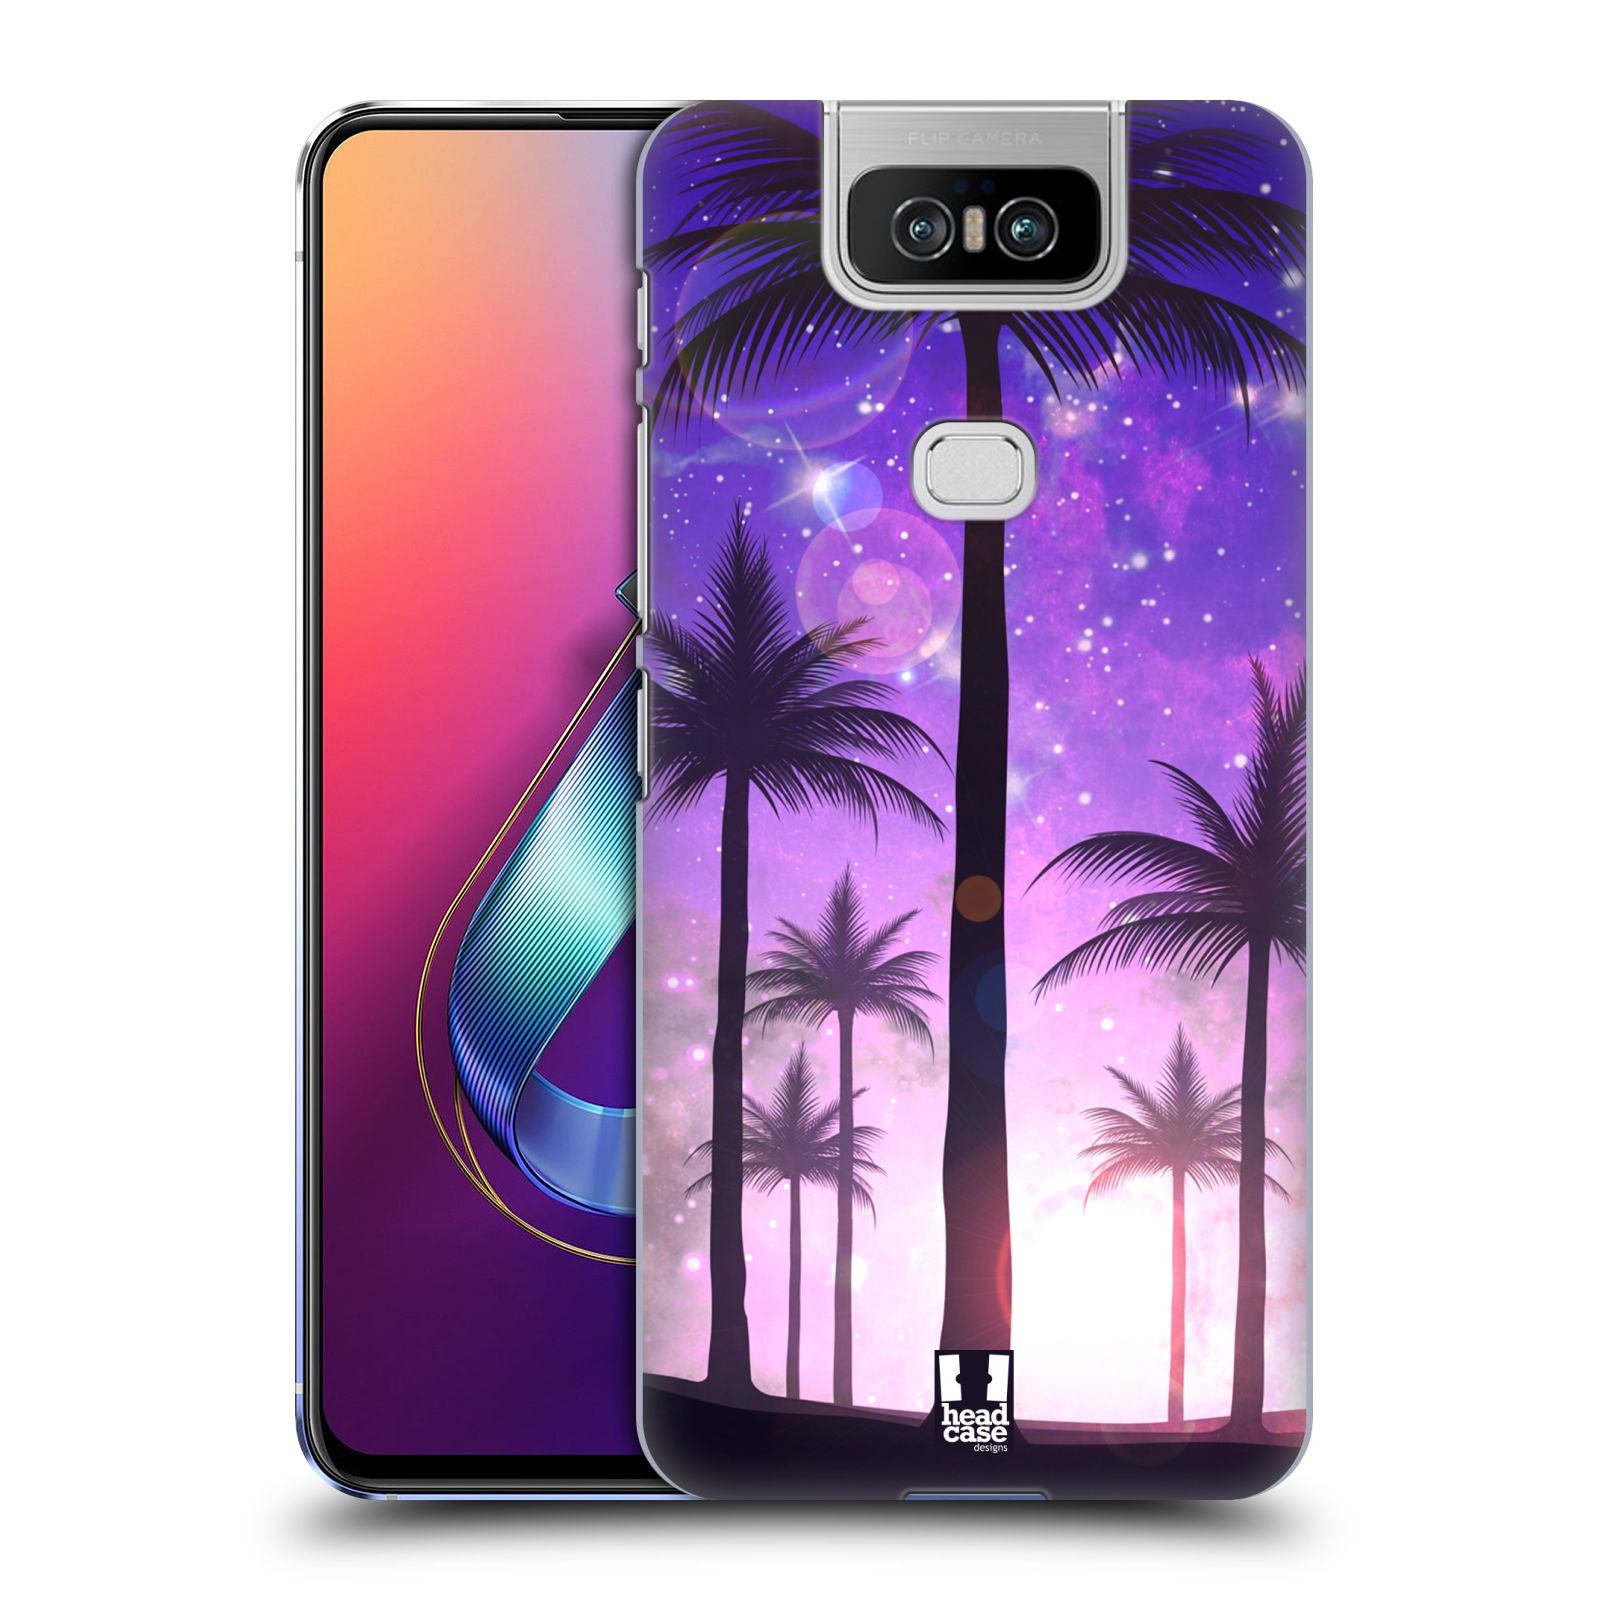 Pouzdro na mobil Asus Zenfone 6 ZS630KL - HEAD CASE - vzor Kreslený motiv silueta moře a palmy FIALOVÁ